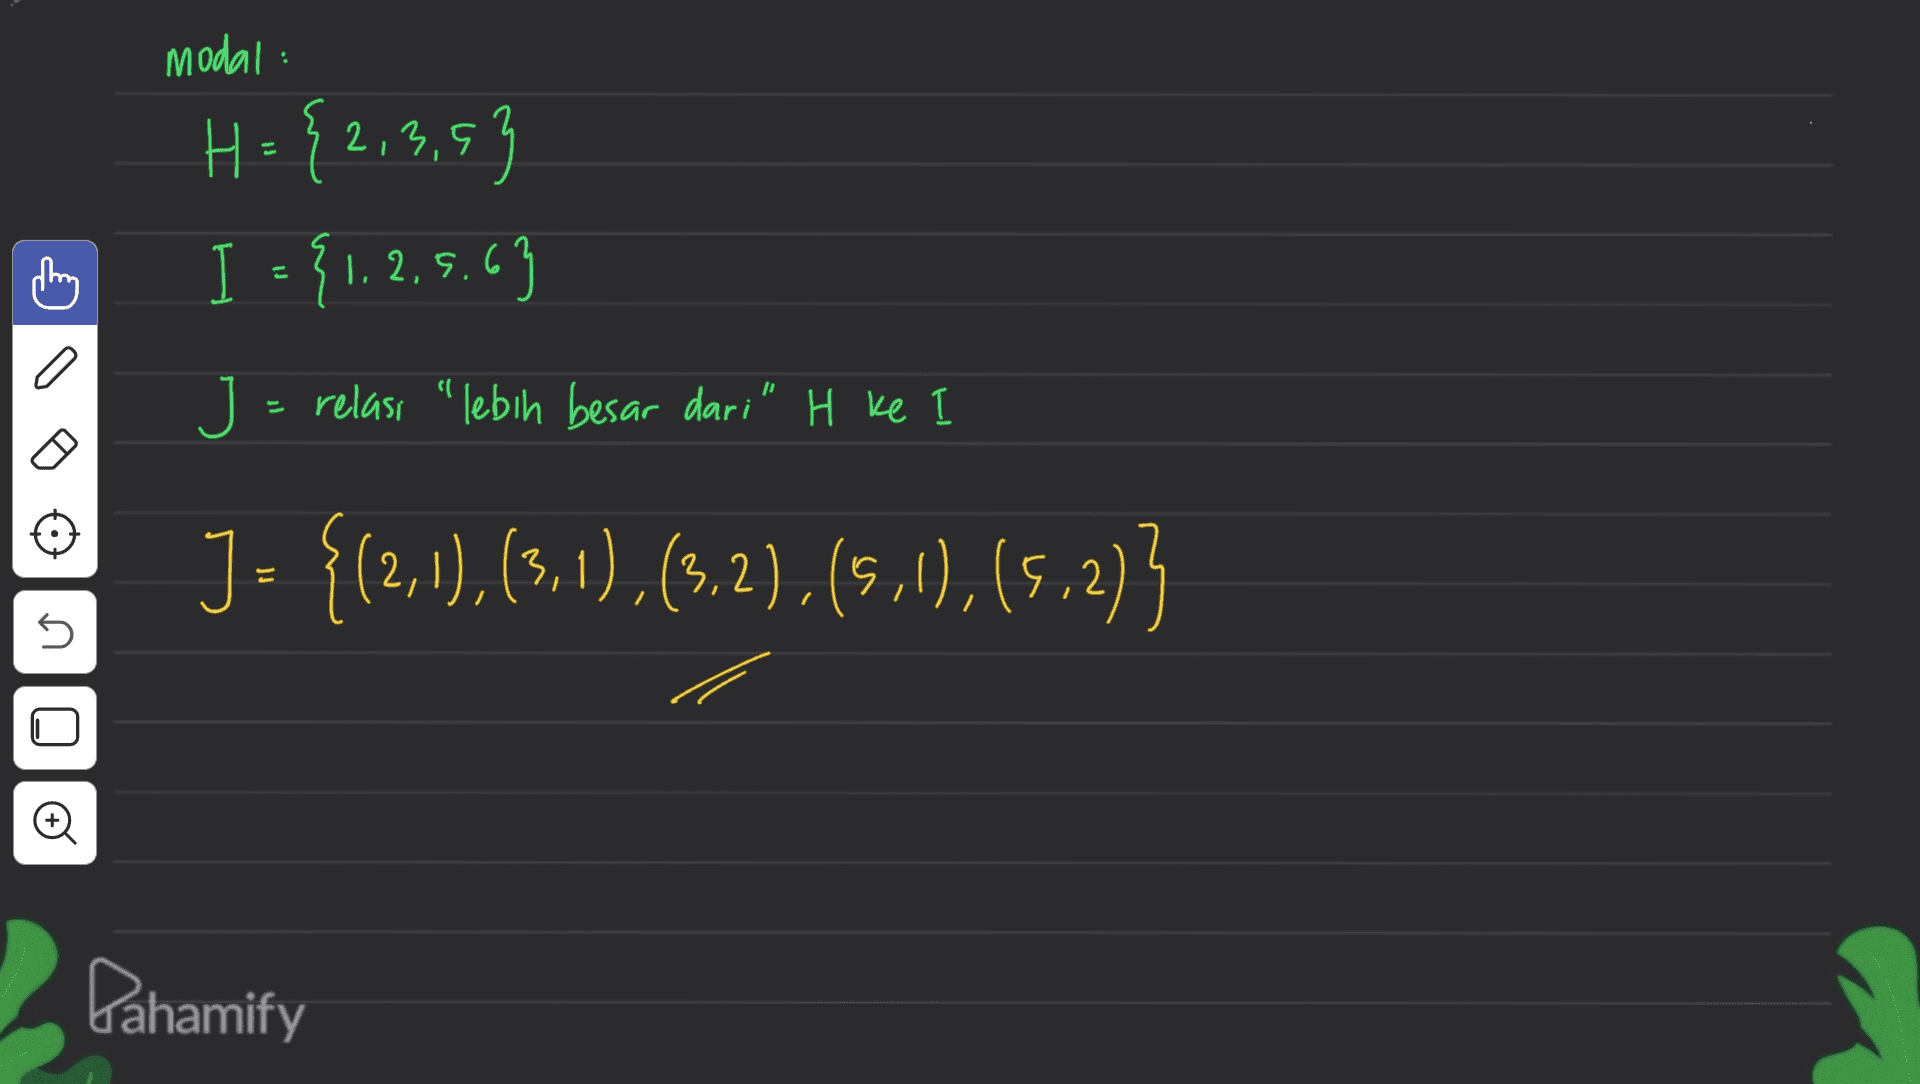 modal: H. {2,3,5} = I = {1.2.5.63 こ a J = relası “lebih besar dari" H ke I J = {(2,1),(3,1),(3,2), (5,1), (5.2); s s Oo Dahamify 